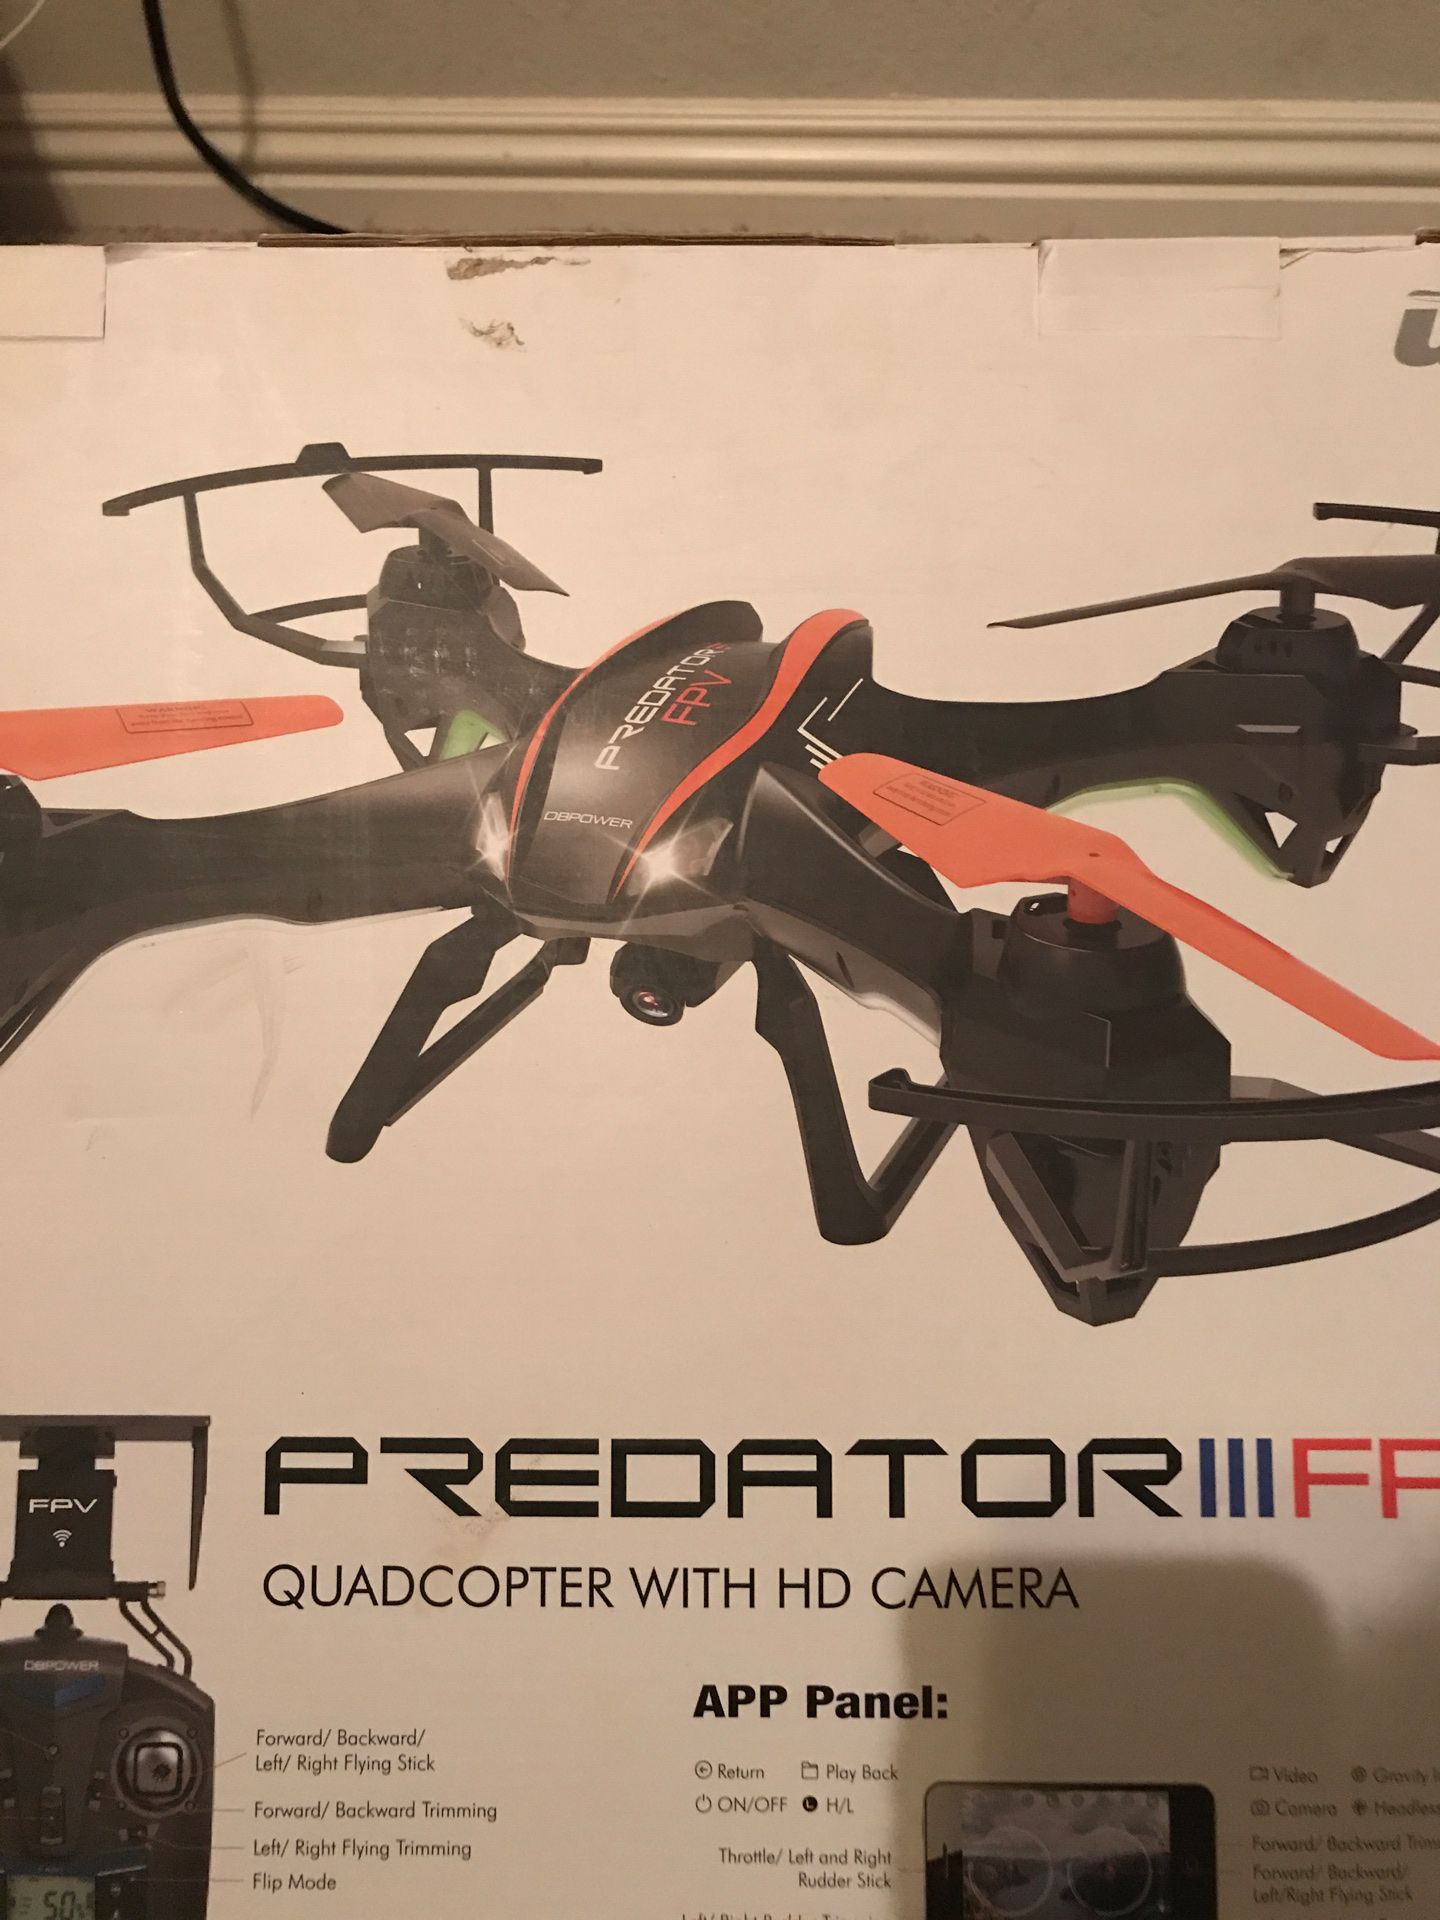 Predator Drone with Camera